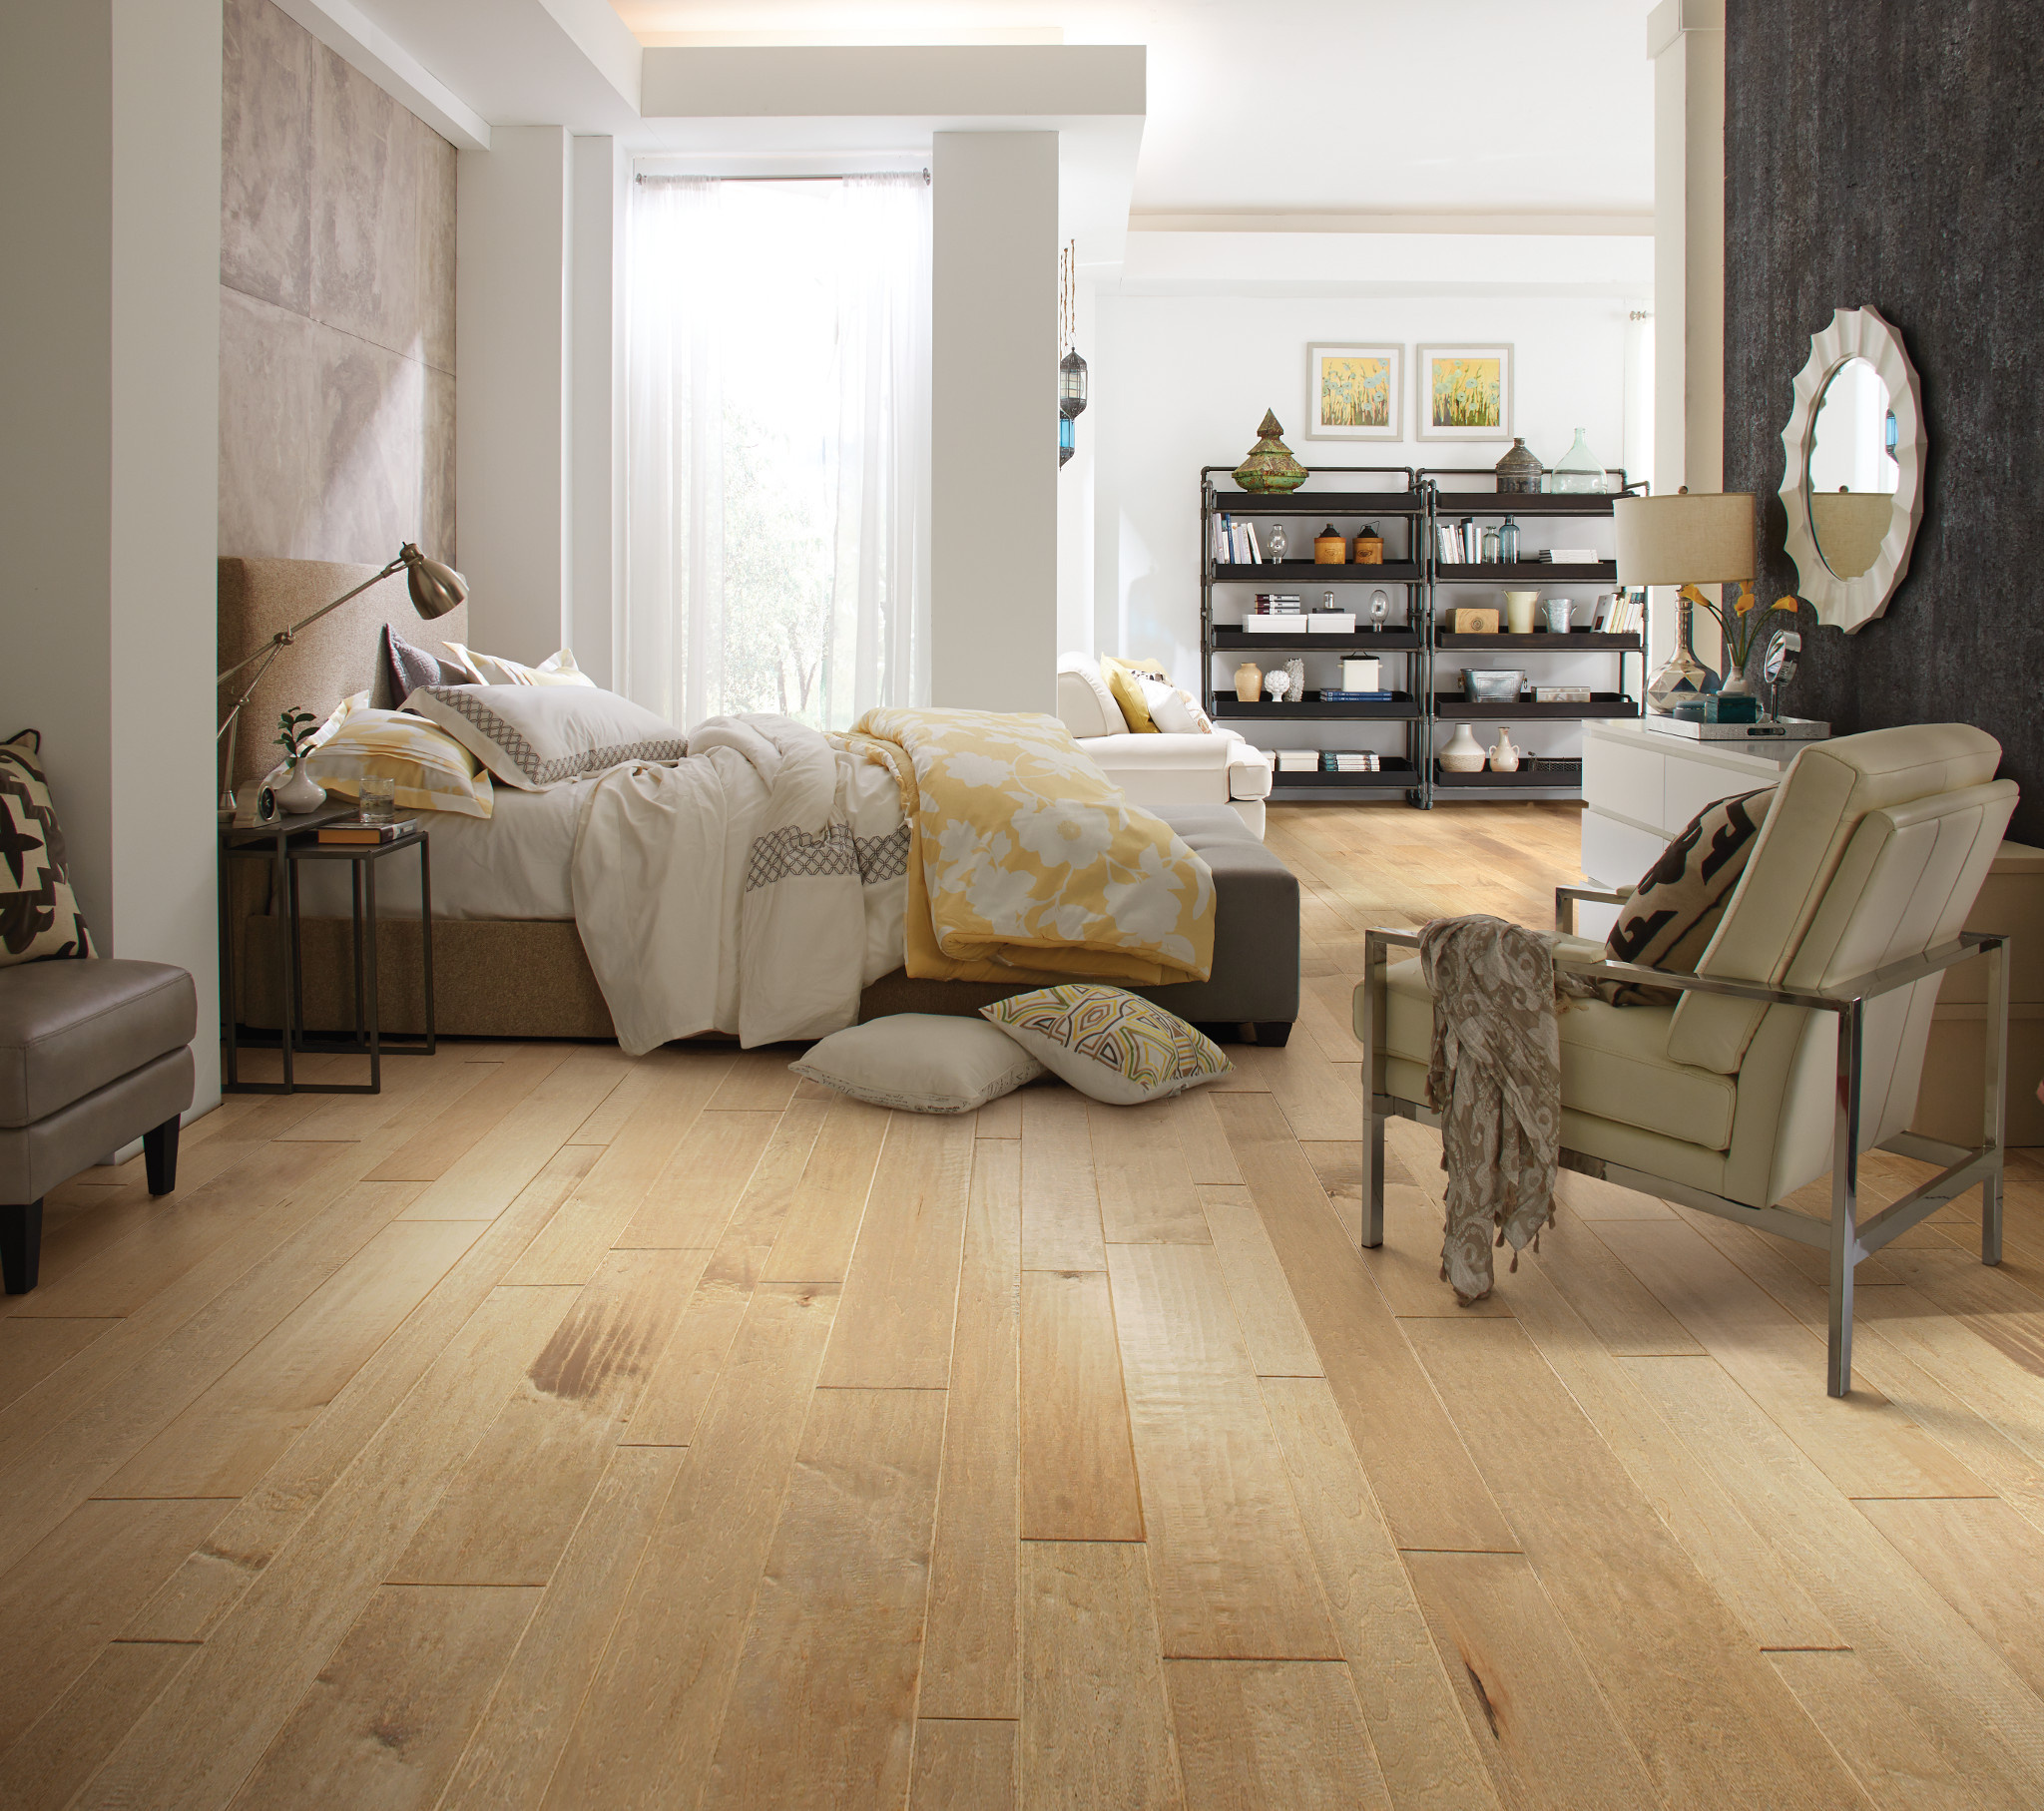 Hardwood Floor, Varying widths, Unique floor designs, Creative hardwood options, 2050x1820 HD Desktop